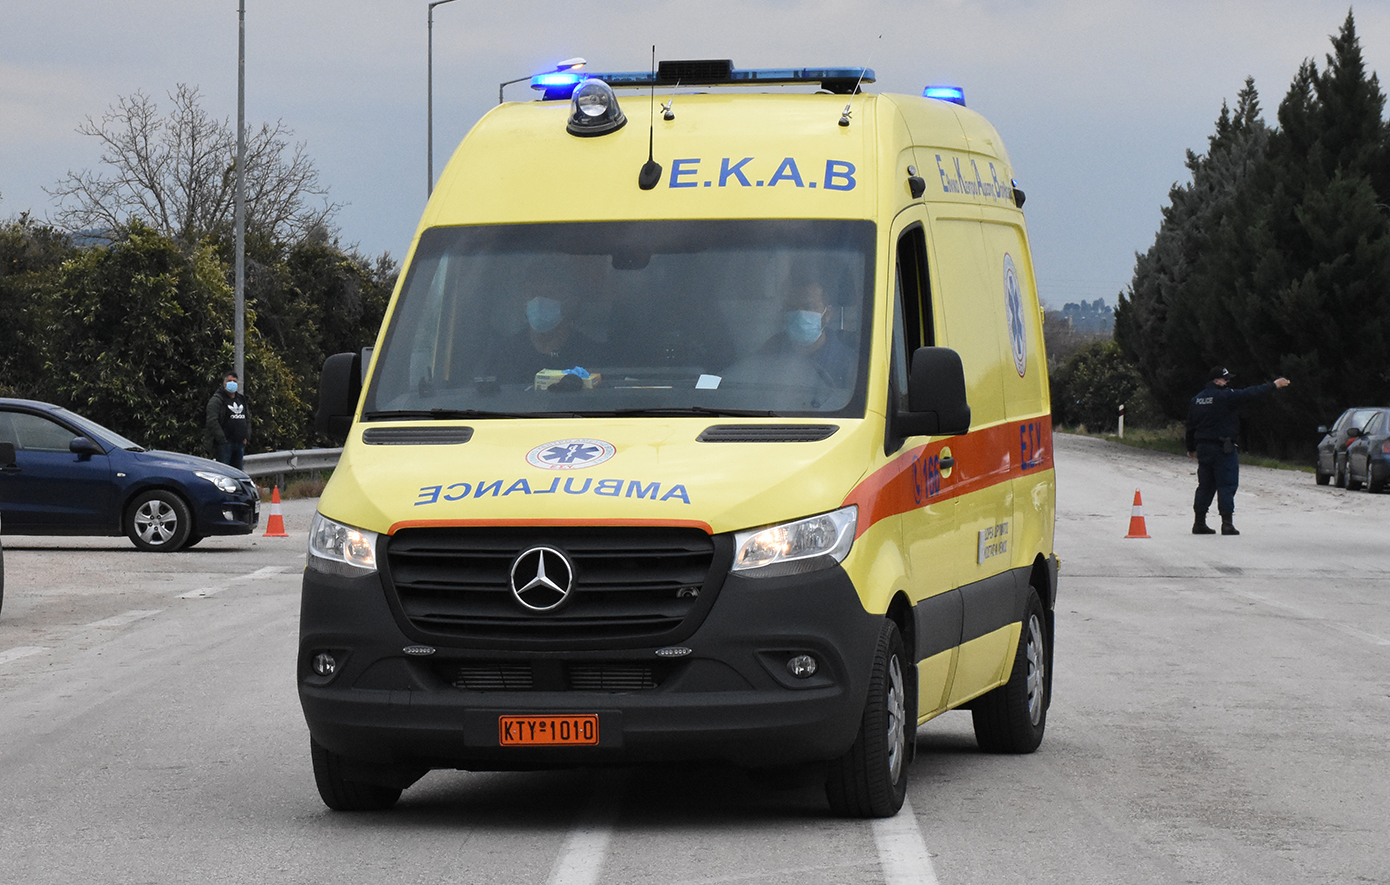 Τραγωδία στη Θεσσαλονίκη: Αισθάνθηκε αδιαθεσία ενώ οδηγούσε, βγήκε από το αυτοκίνητο και πέθανε